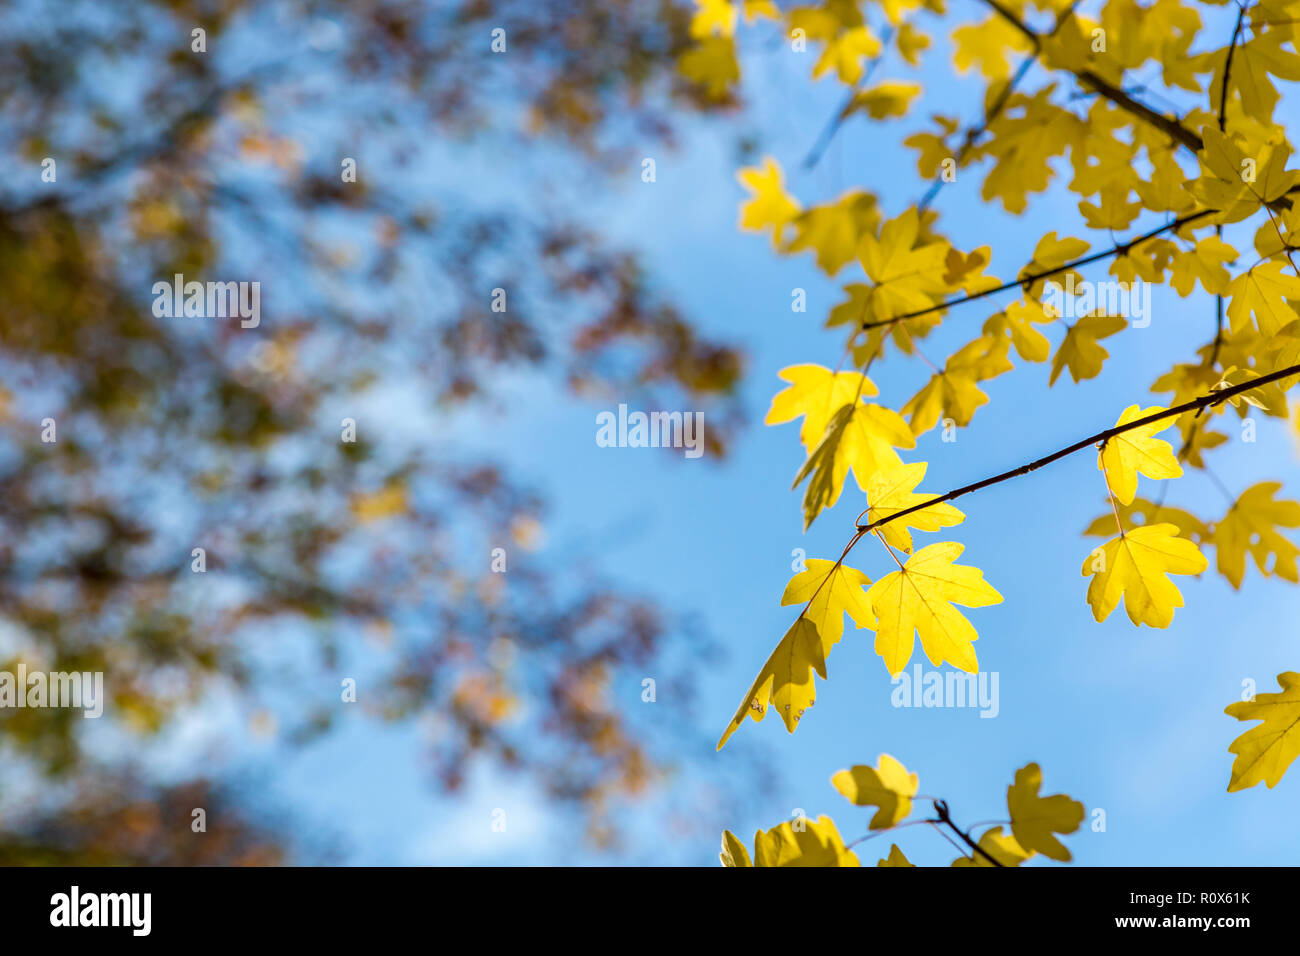 Di colore giallo brillante foglie di acero in sole in autunno cadono, Ulmen Maar, West Eifel campo vulcanico, regione della Renania, Germania, Europa Foto Stock